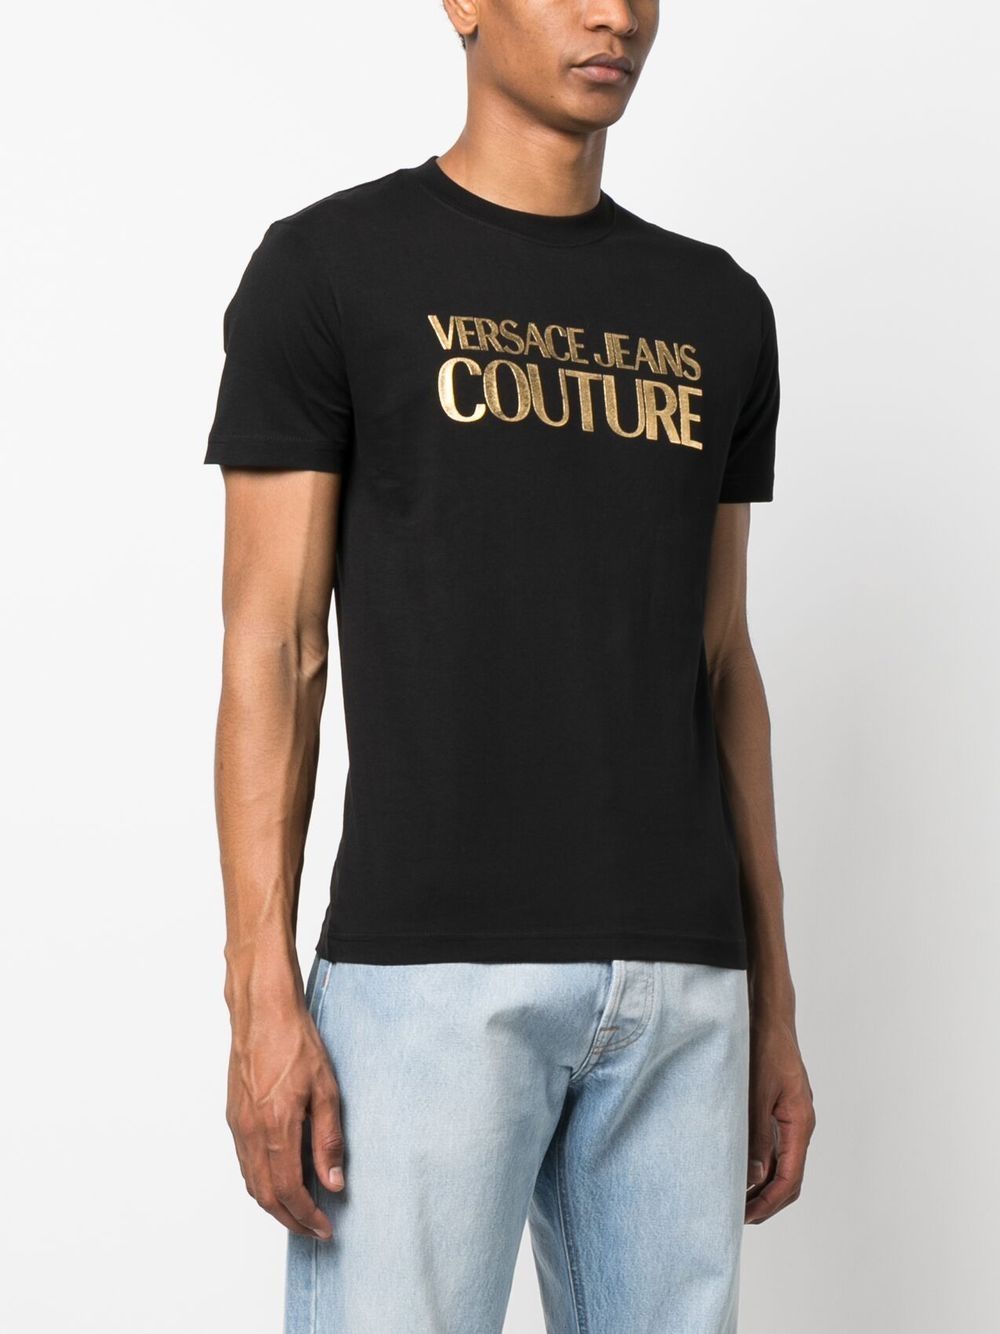 sandhed indtil nu zebra Versace Jeans Couture Black Gold Foil Logo T-shirt | ModeSens